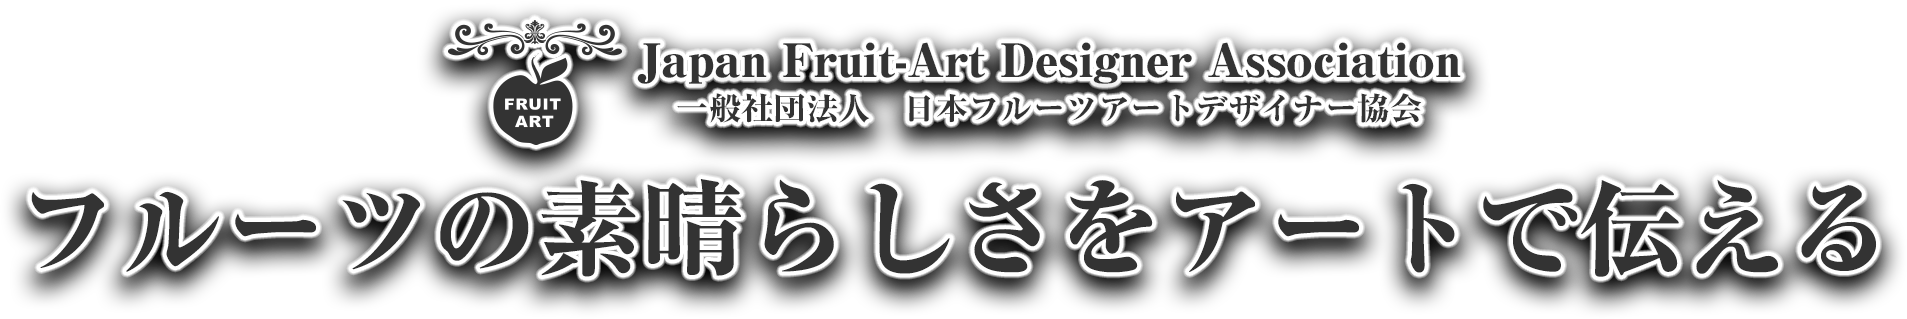 一般社団法人日本フルーツアートデザイナー協会